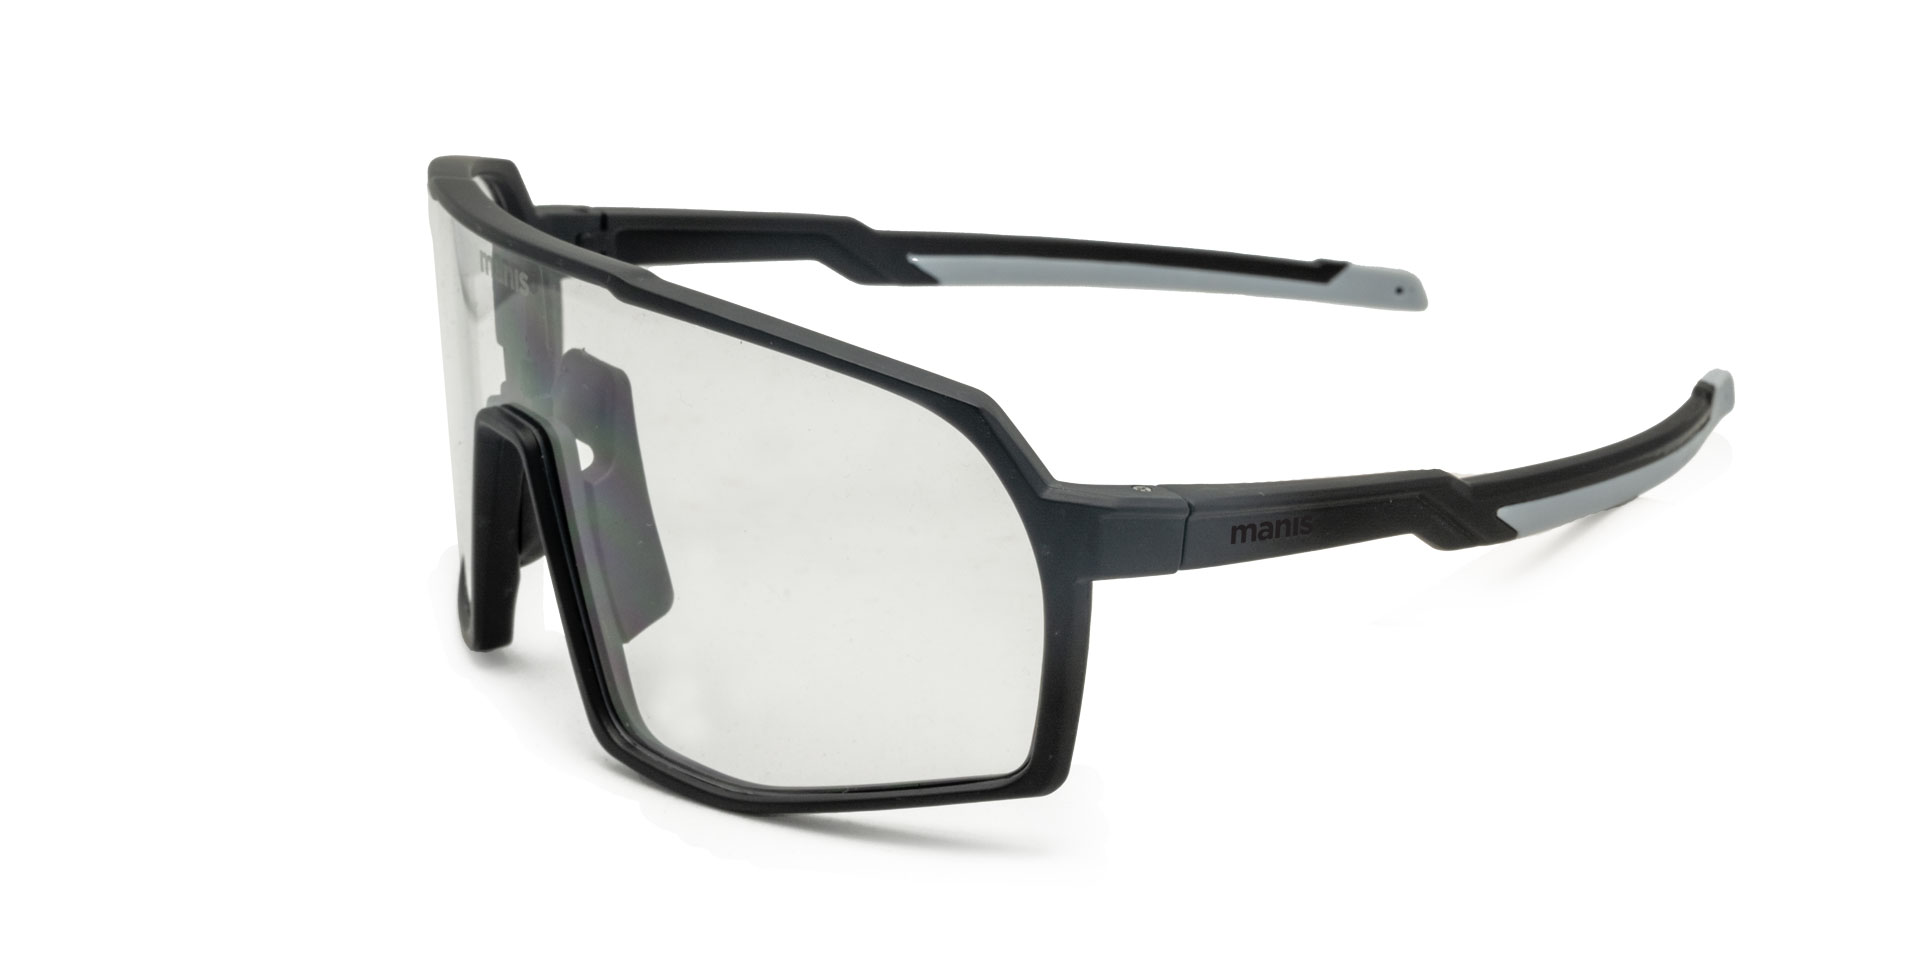 tokul manis optics mountain bike glasses eyewear protection